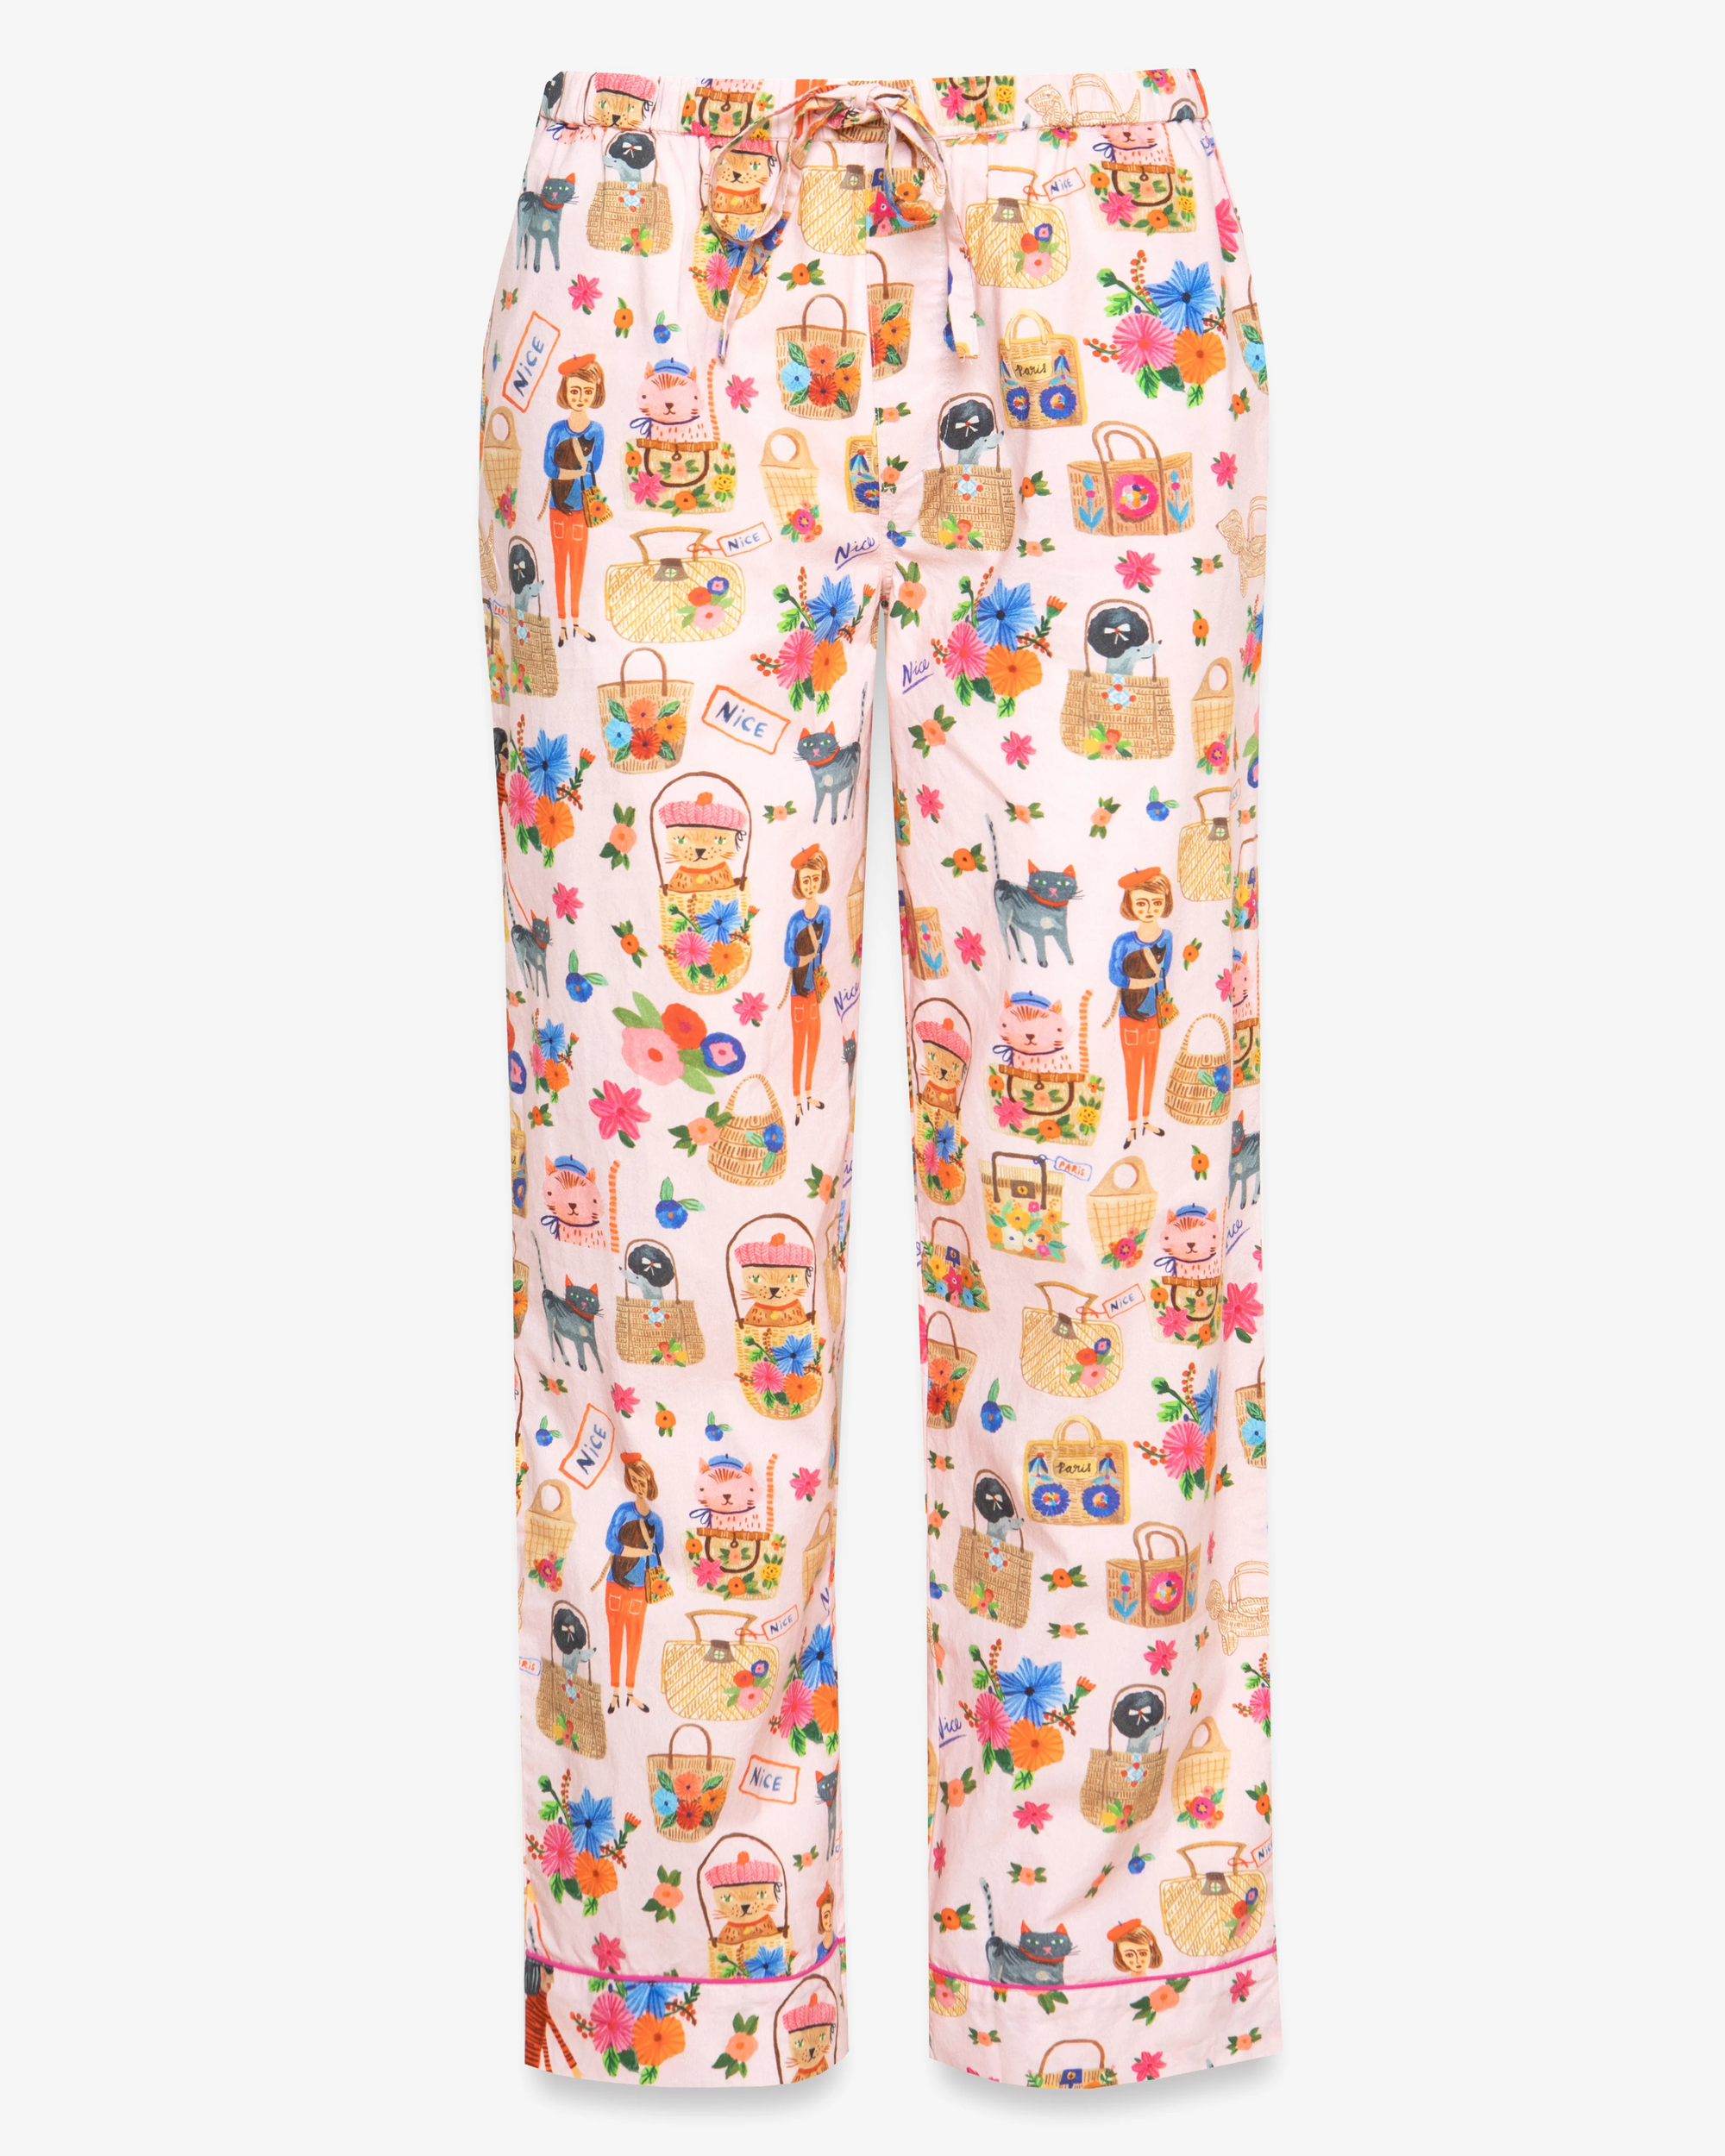 OohLaLa Cats Pyjama Set